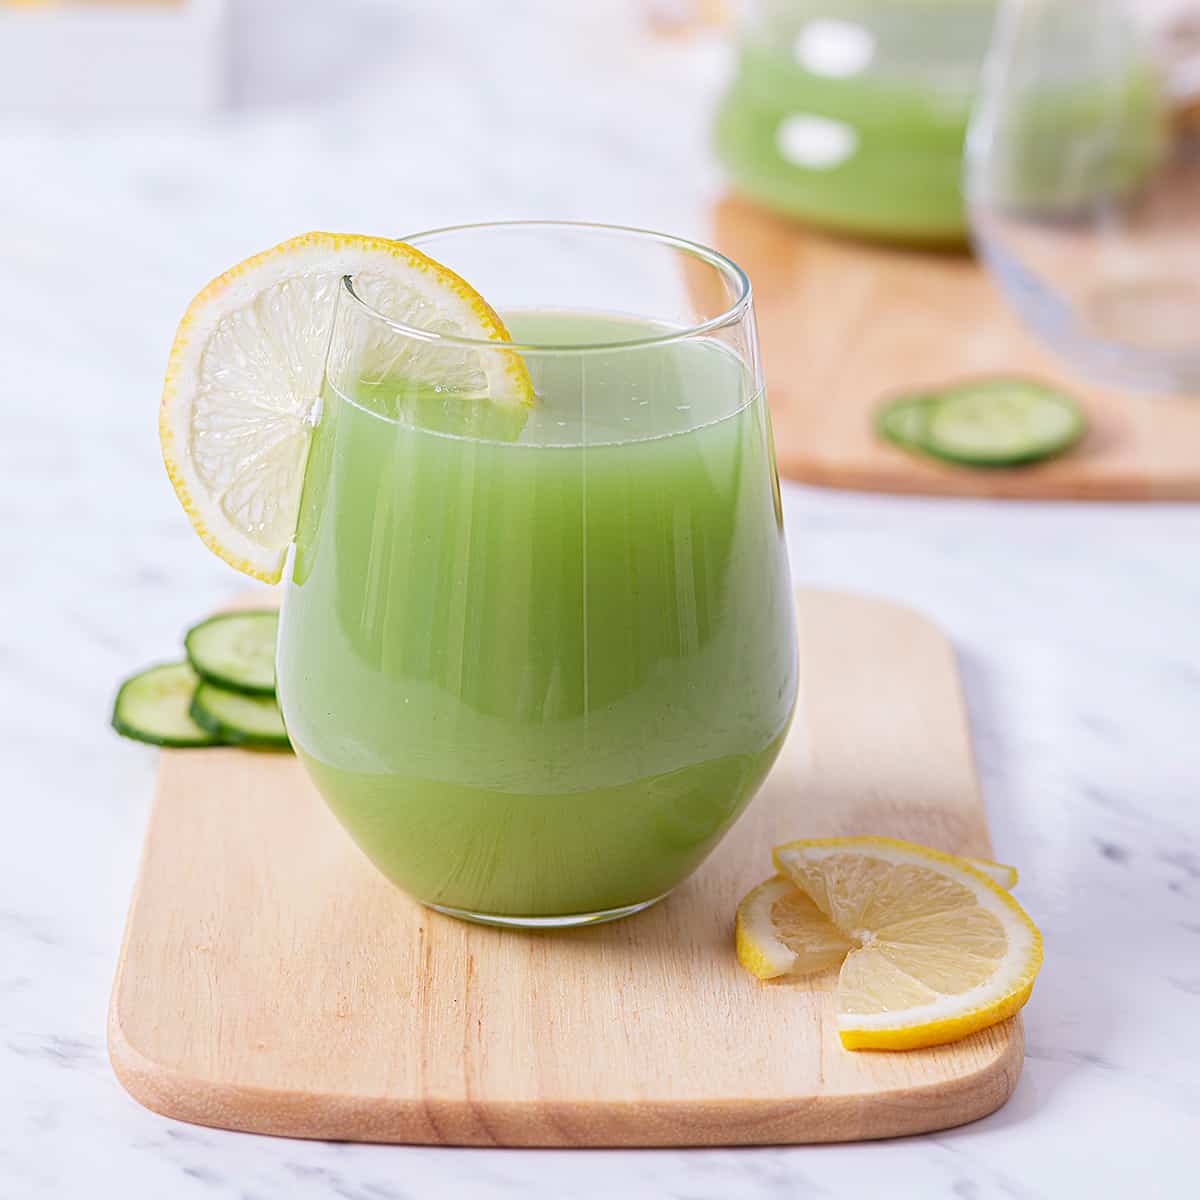 https://cookeatpaleo.com/wp-content/uploads/2021/07/Blender-Green-Juice-6.jpg